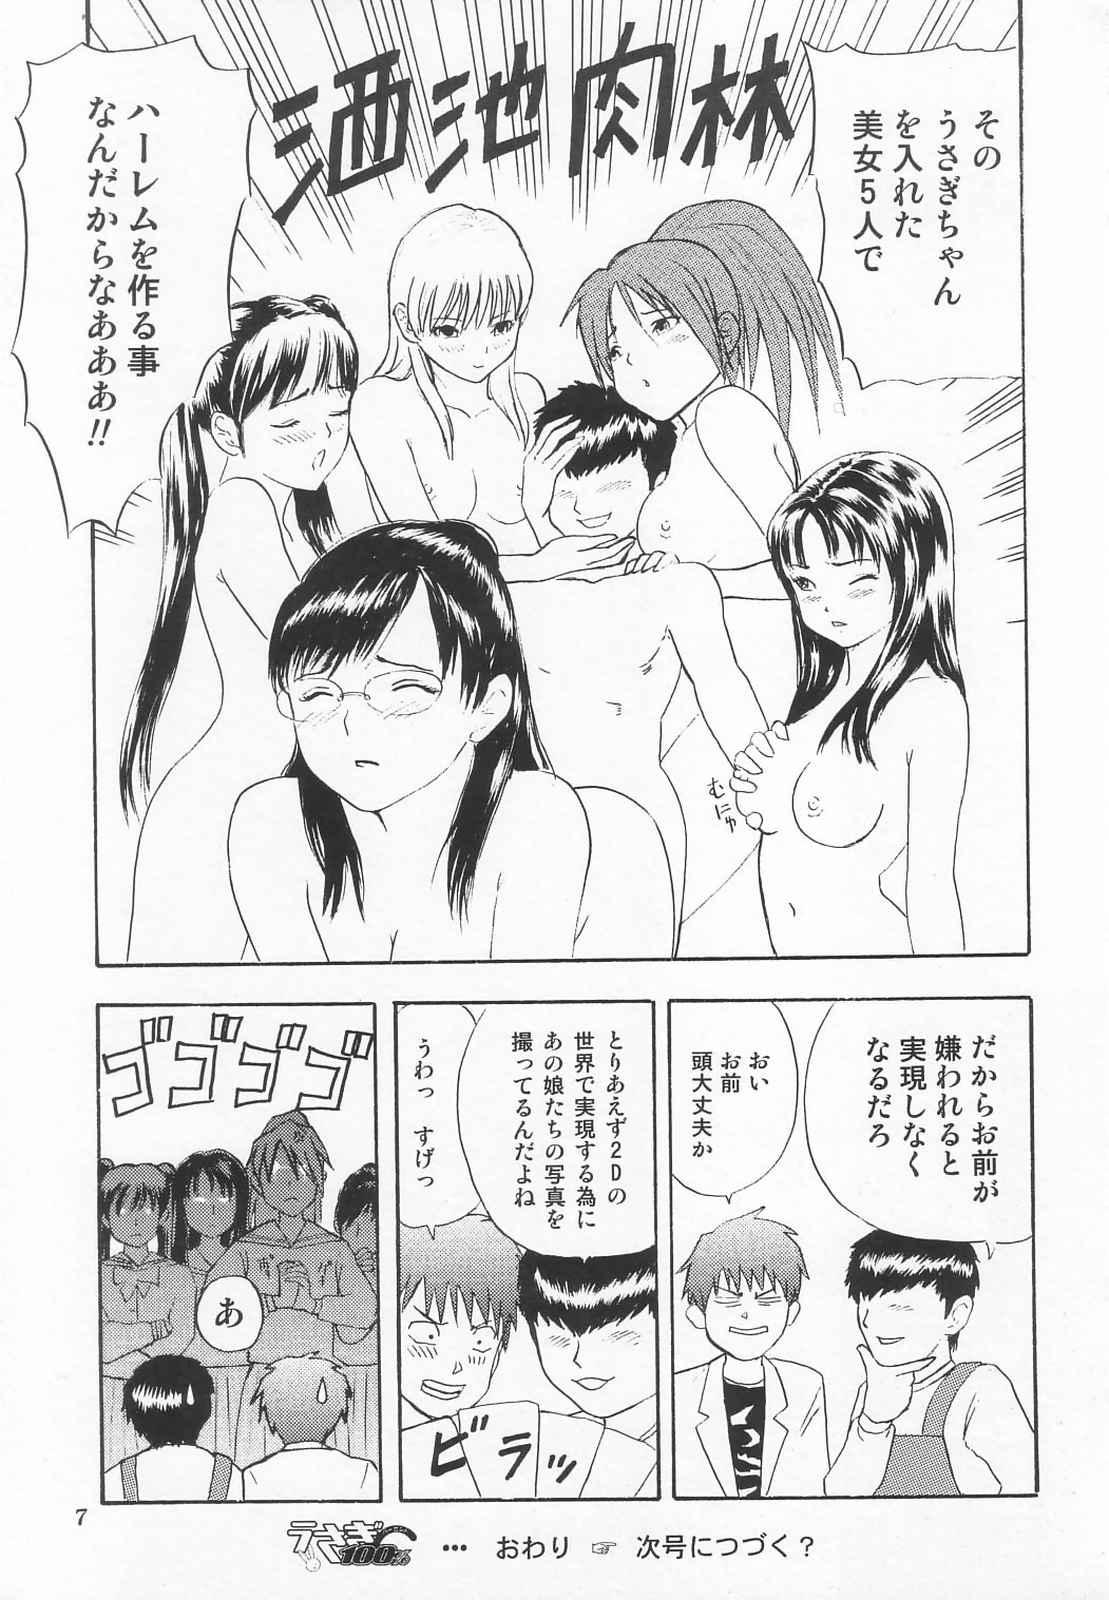 Gay 3some Tokusatsu Magazine x 2003 Fuyu Gou - Sailor moon Ichigo 100 Flash - Page 9